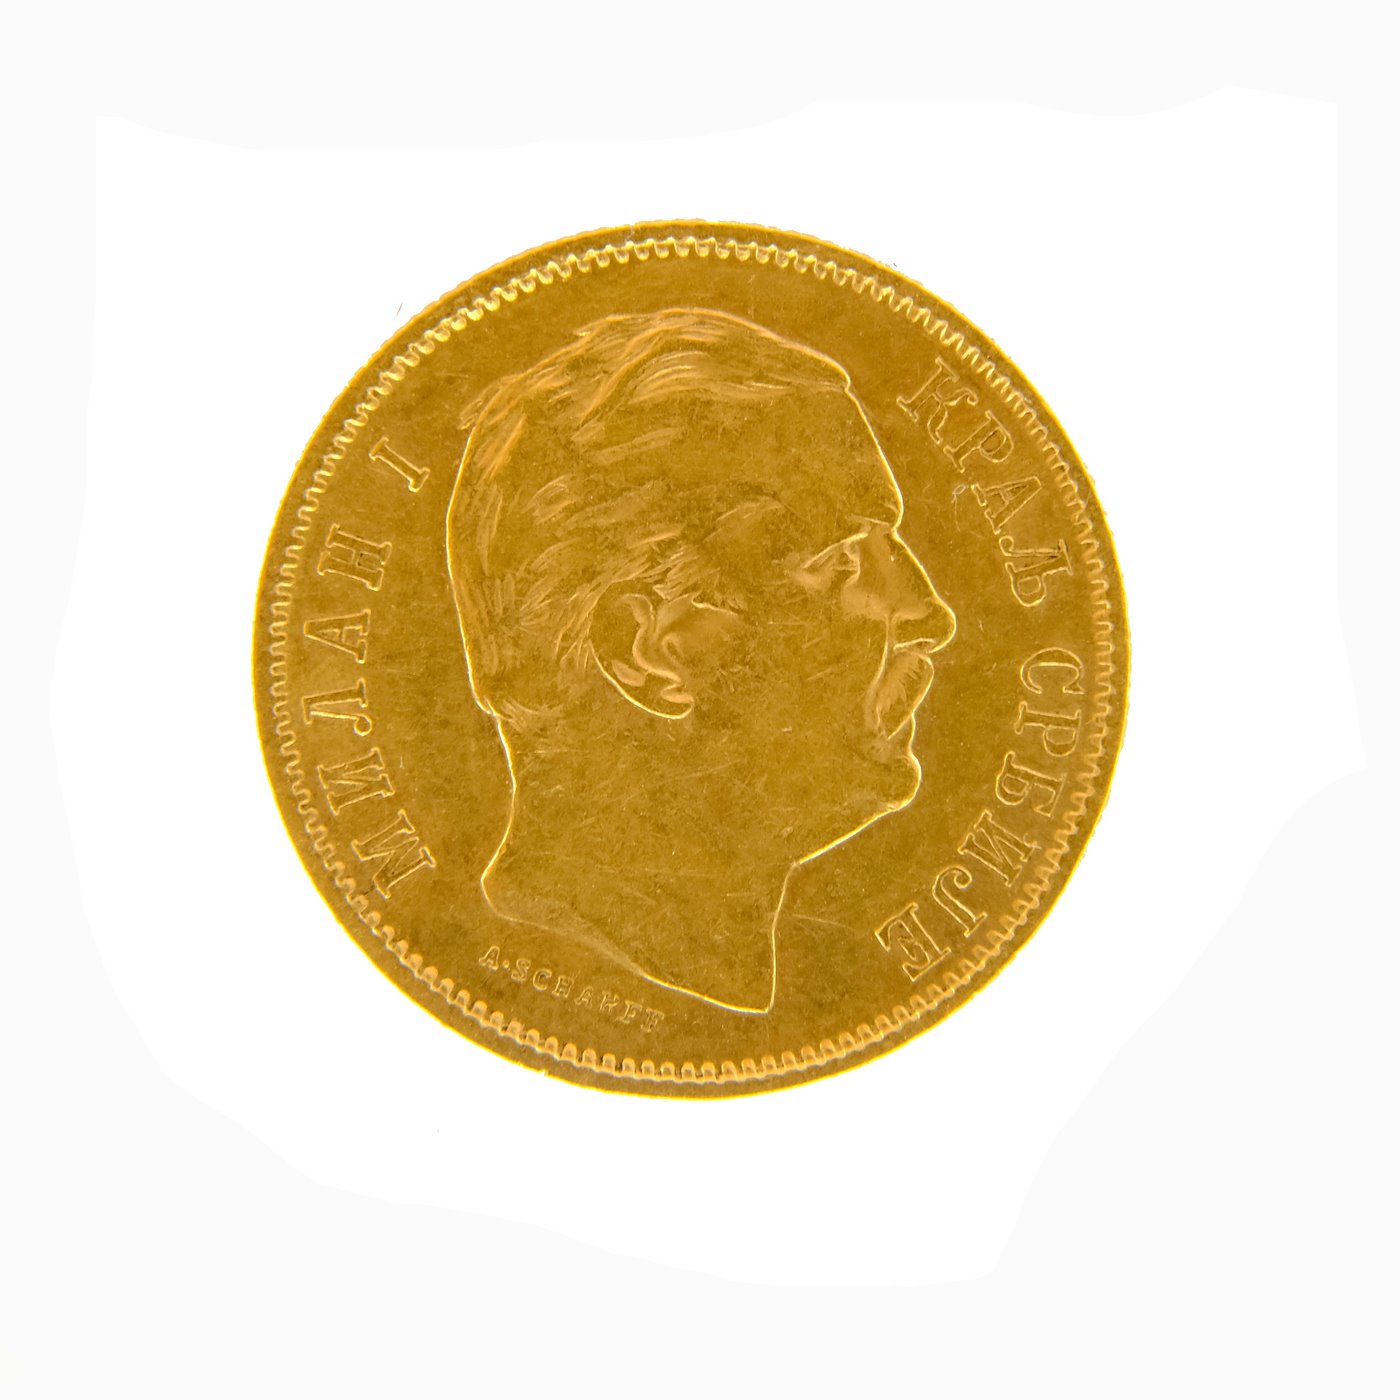 .. - SRBSKO zlatý 10 dinár MILAN I. 1882, zlato 900/1000, hrubá hmotnost 3,21 g